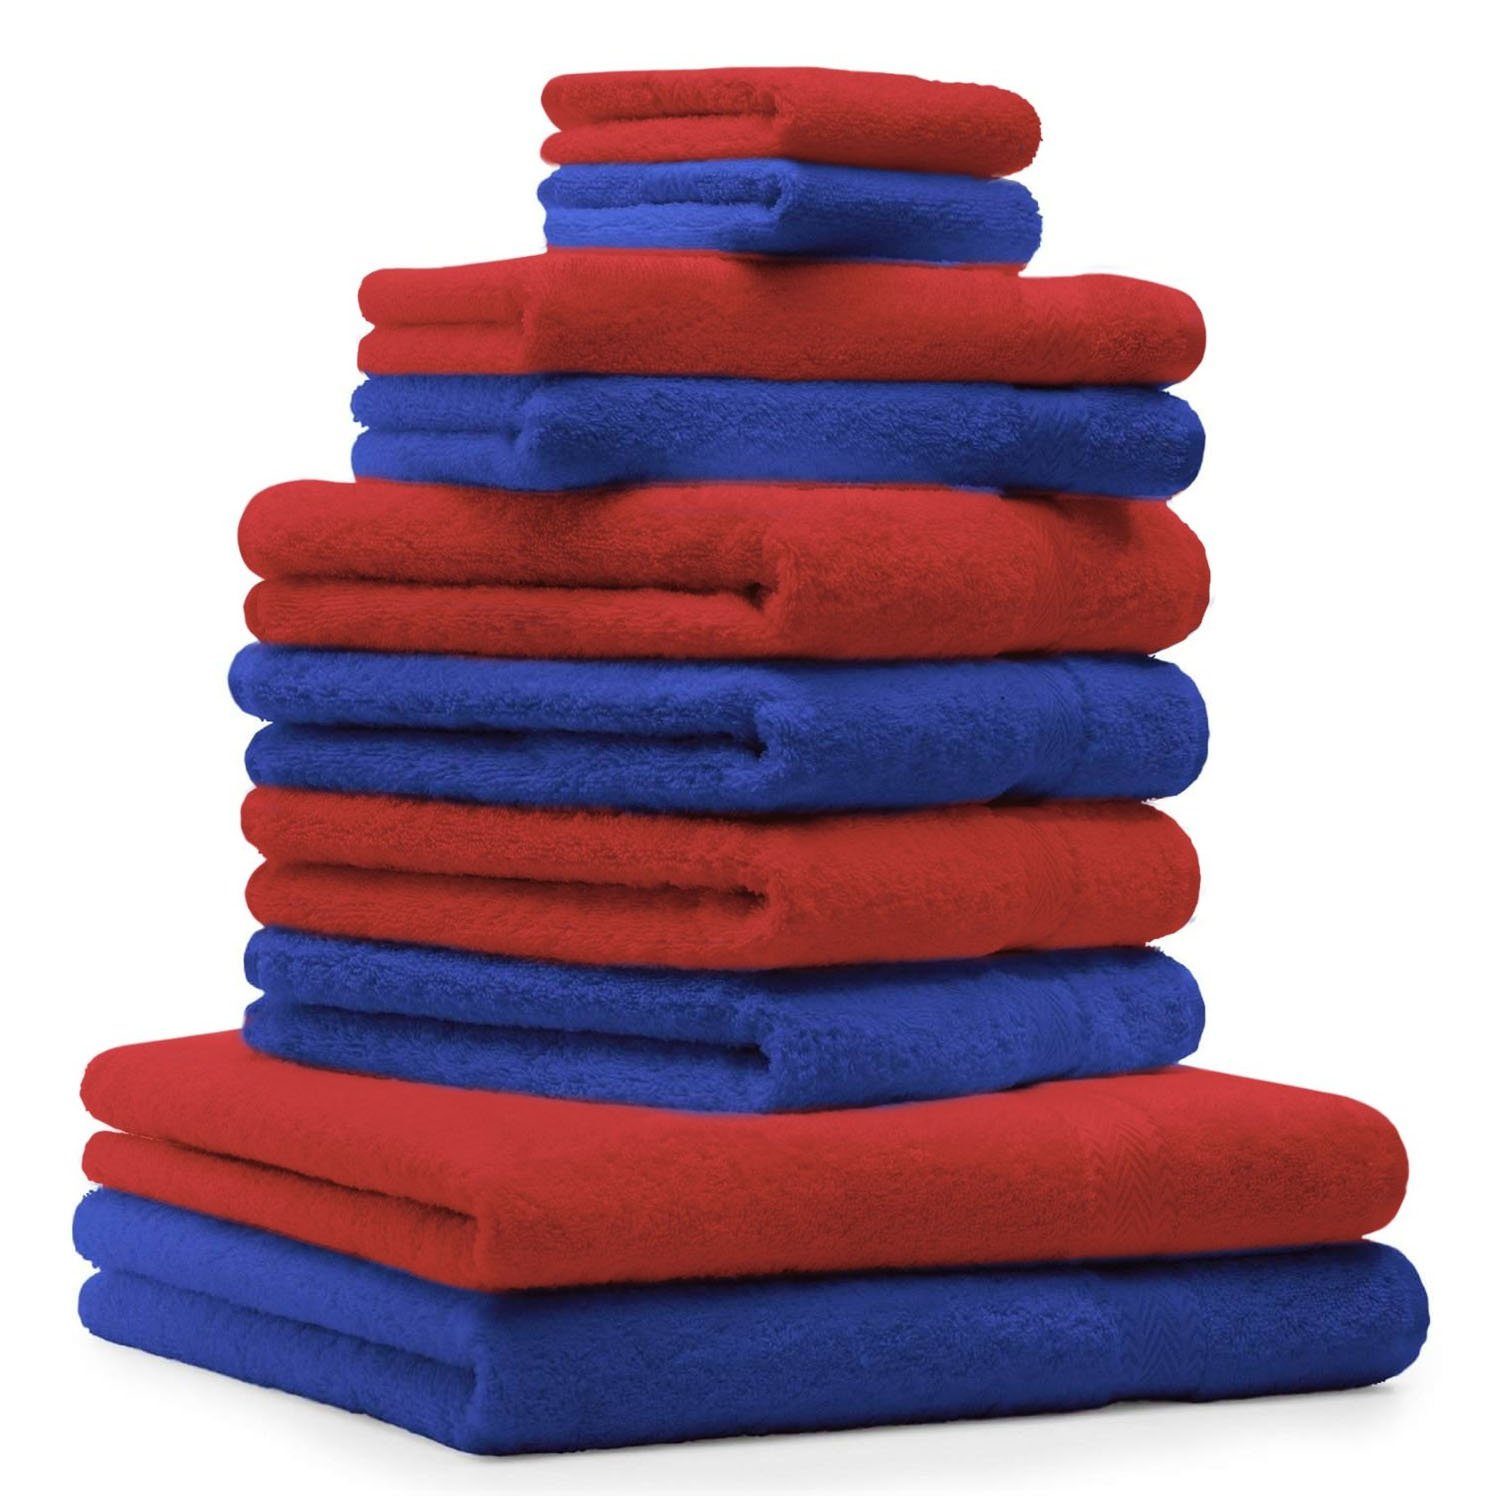 Betz Handtuch Set 10-TLG. Handtuch-Set ClassicFarbe royalblau und rot, 100% Baumwolle | Handtuch-Sets